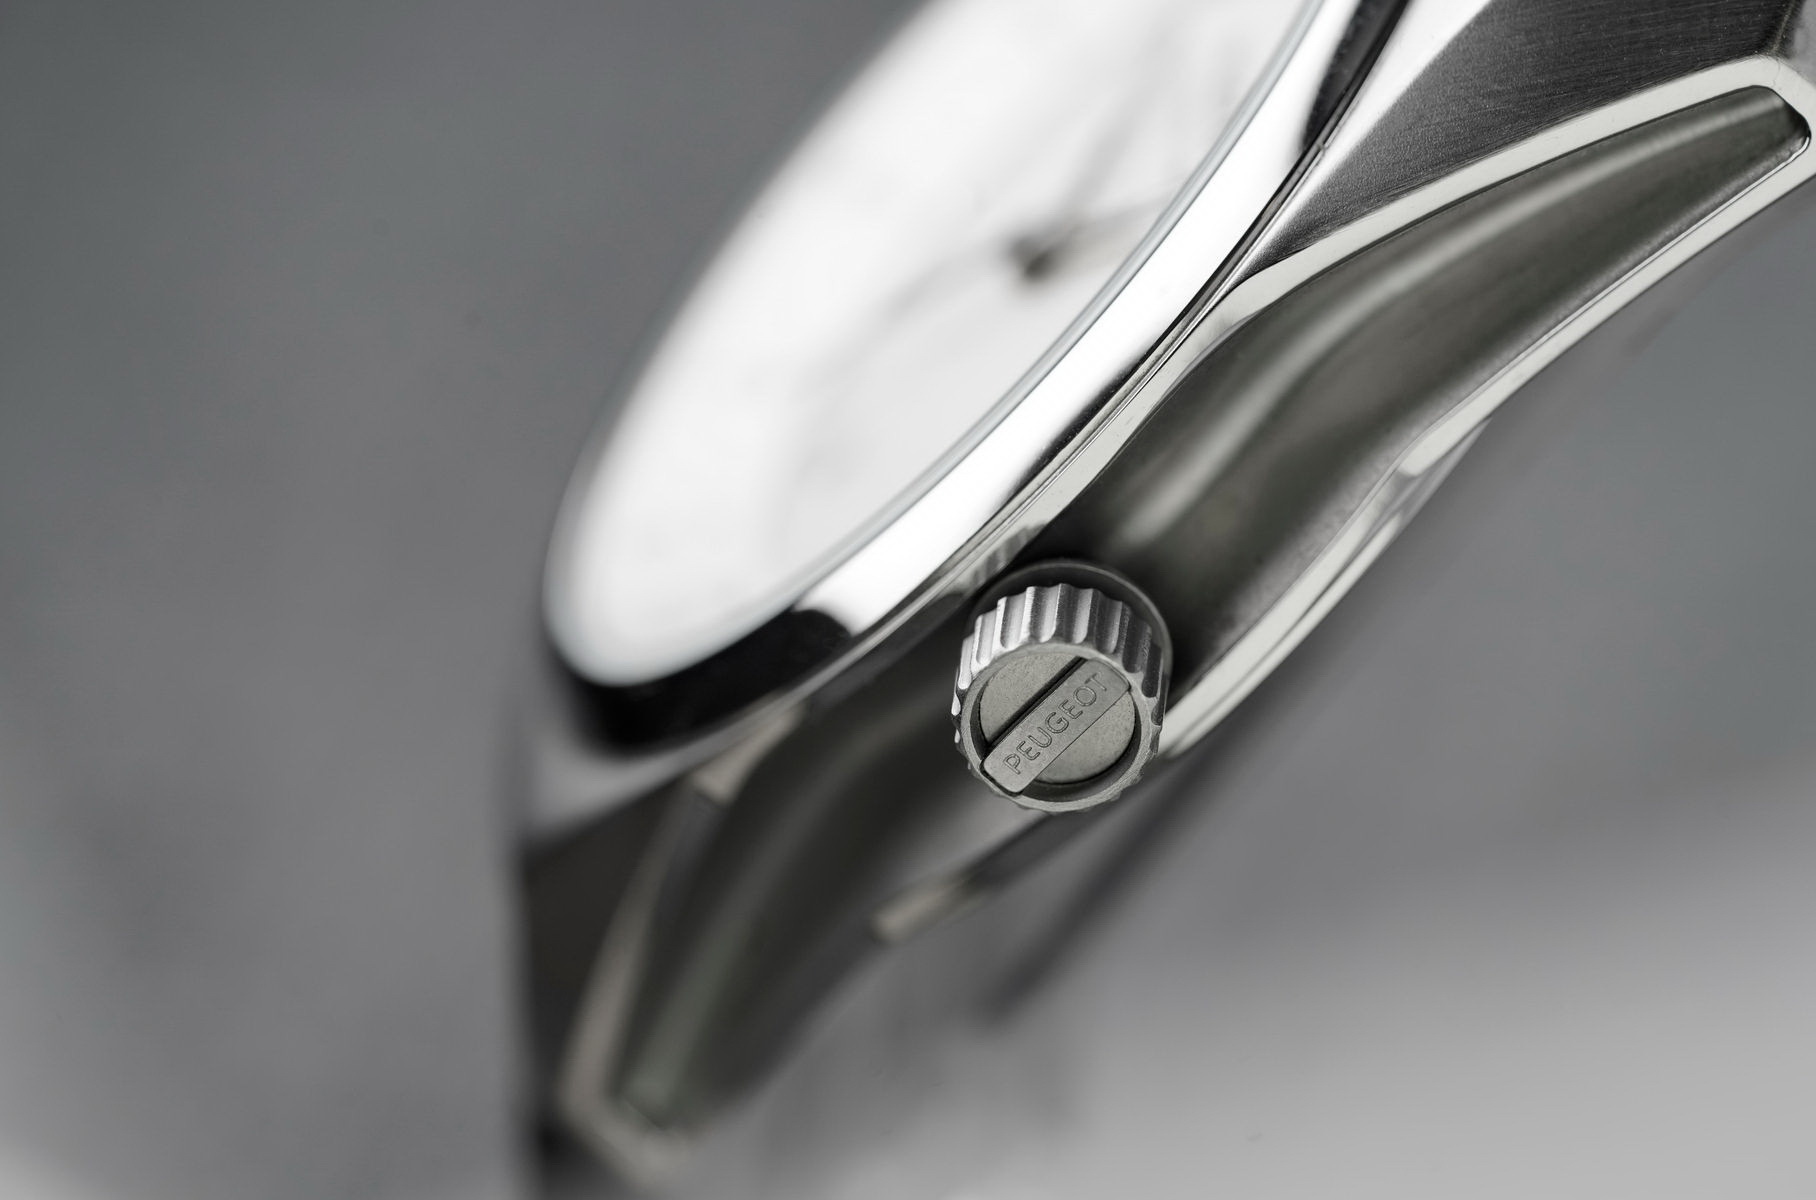 Peugeot выпустила коллекцию недорогих кварцевых часов